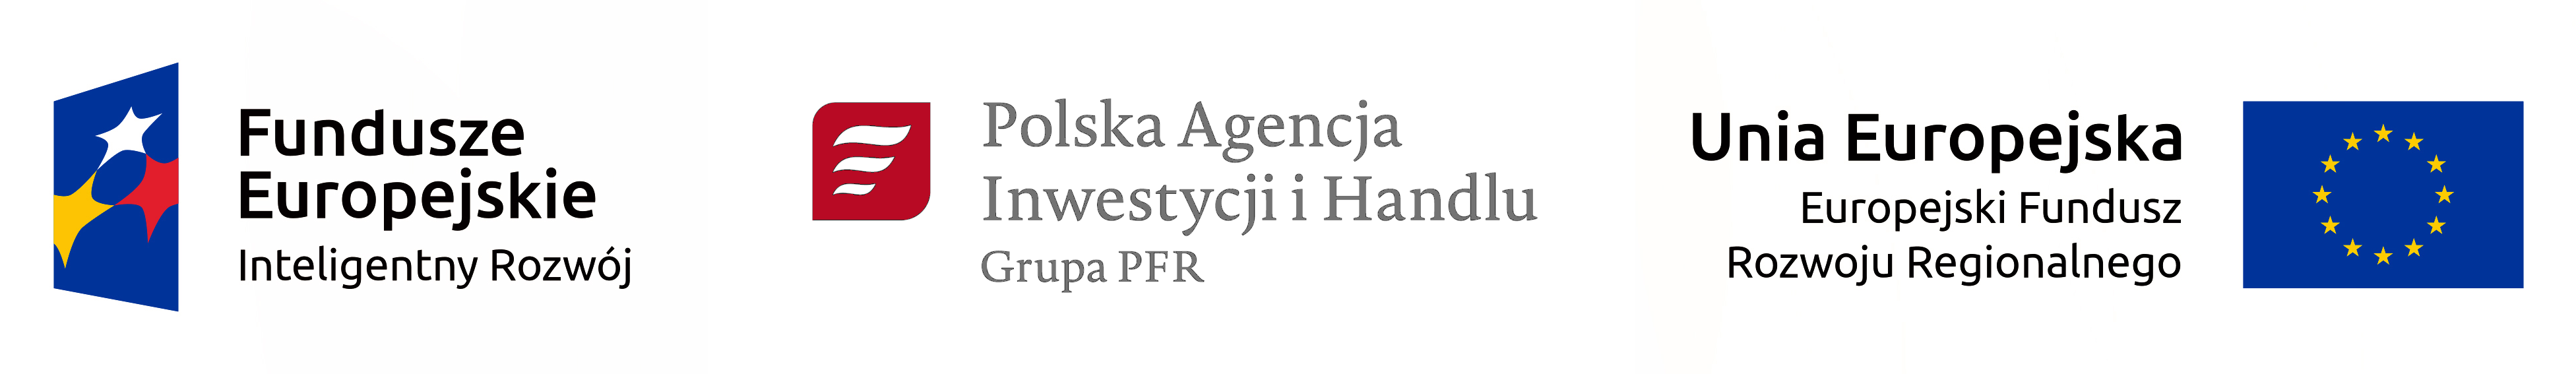 Logotypy w wersji polskiej